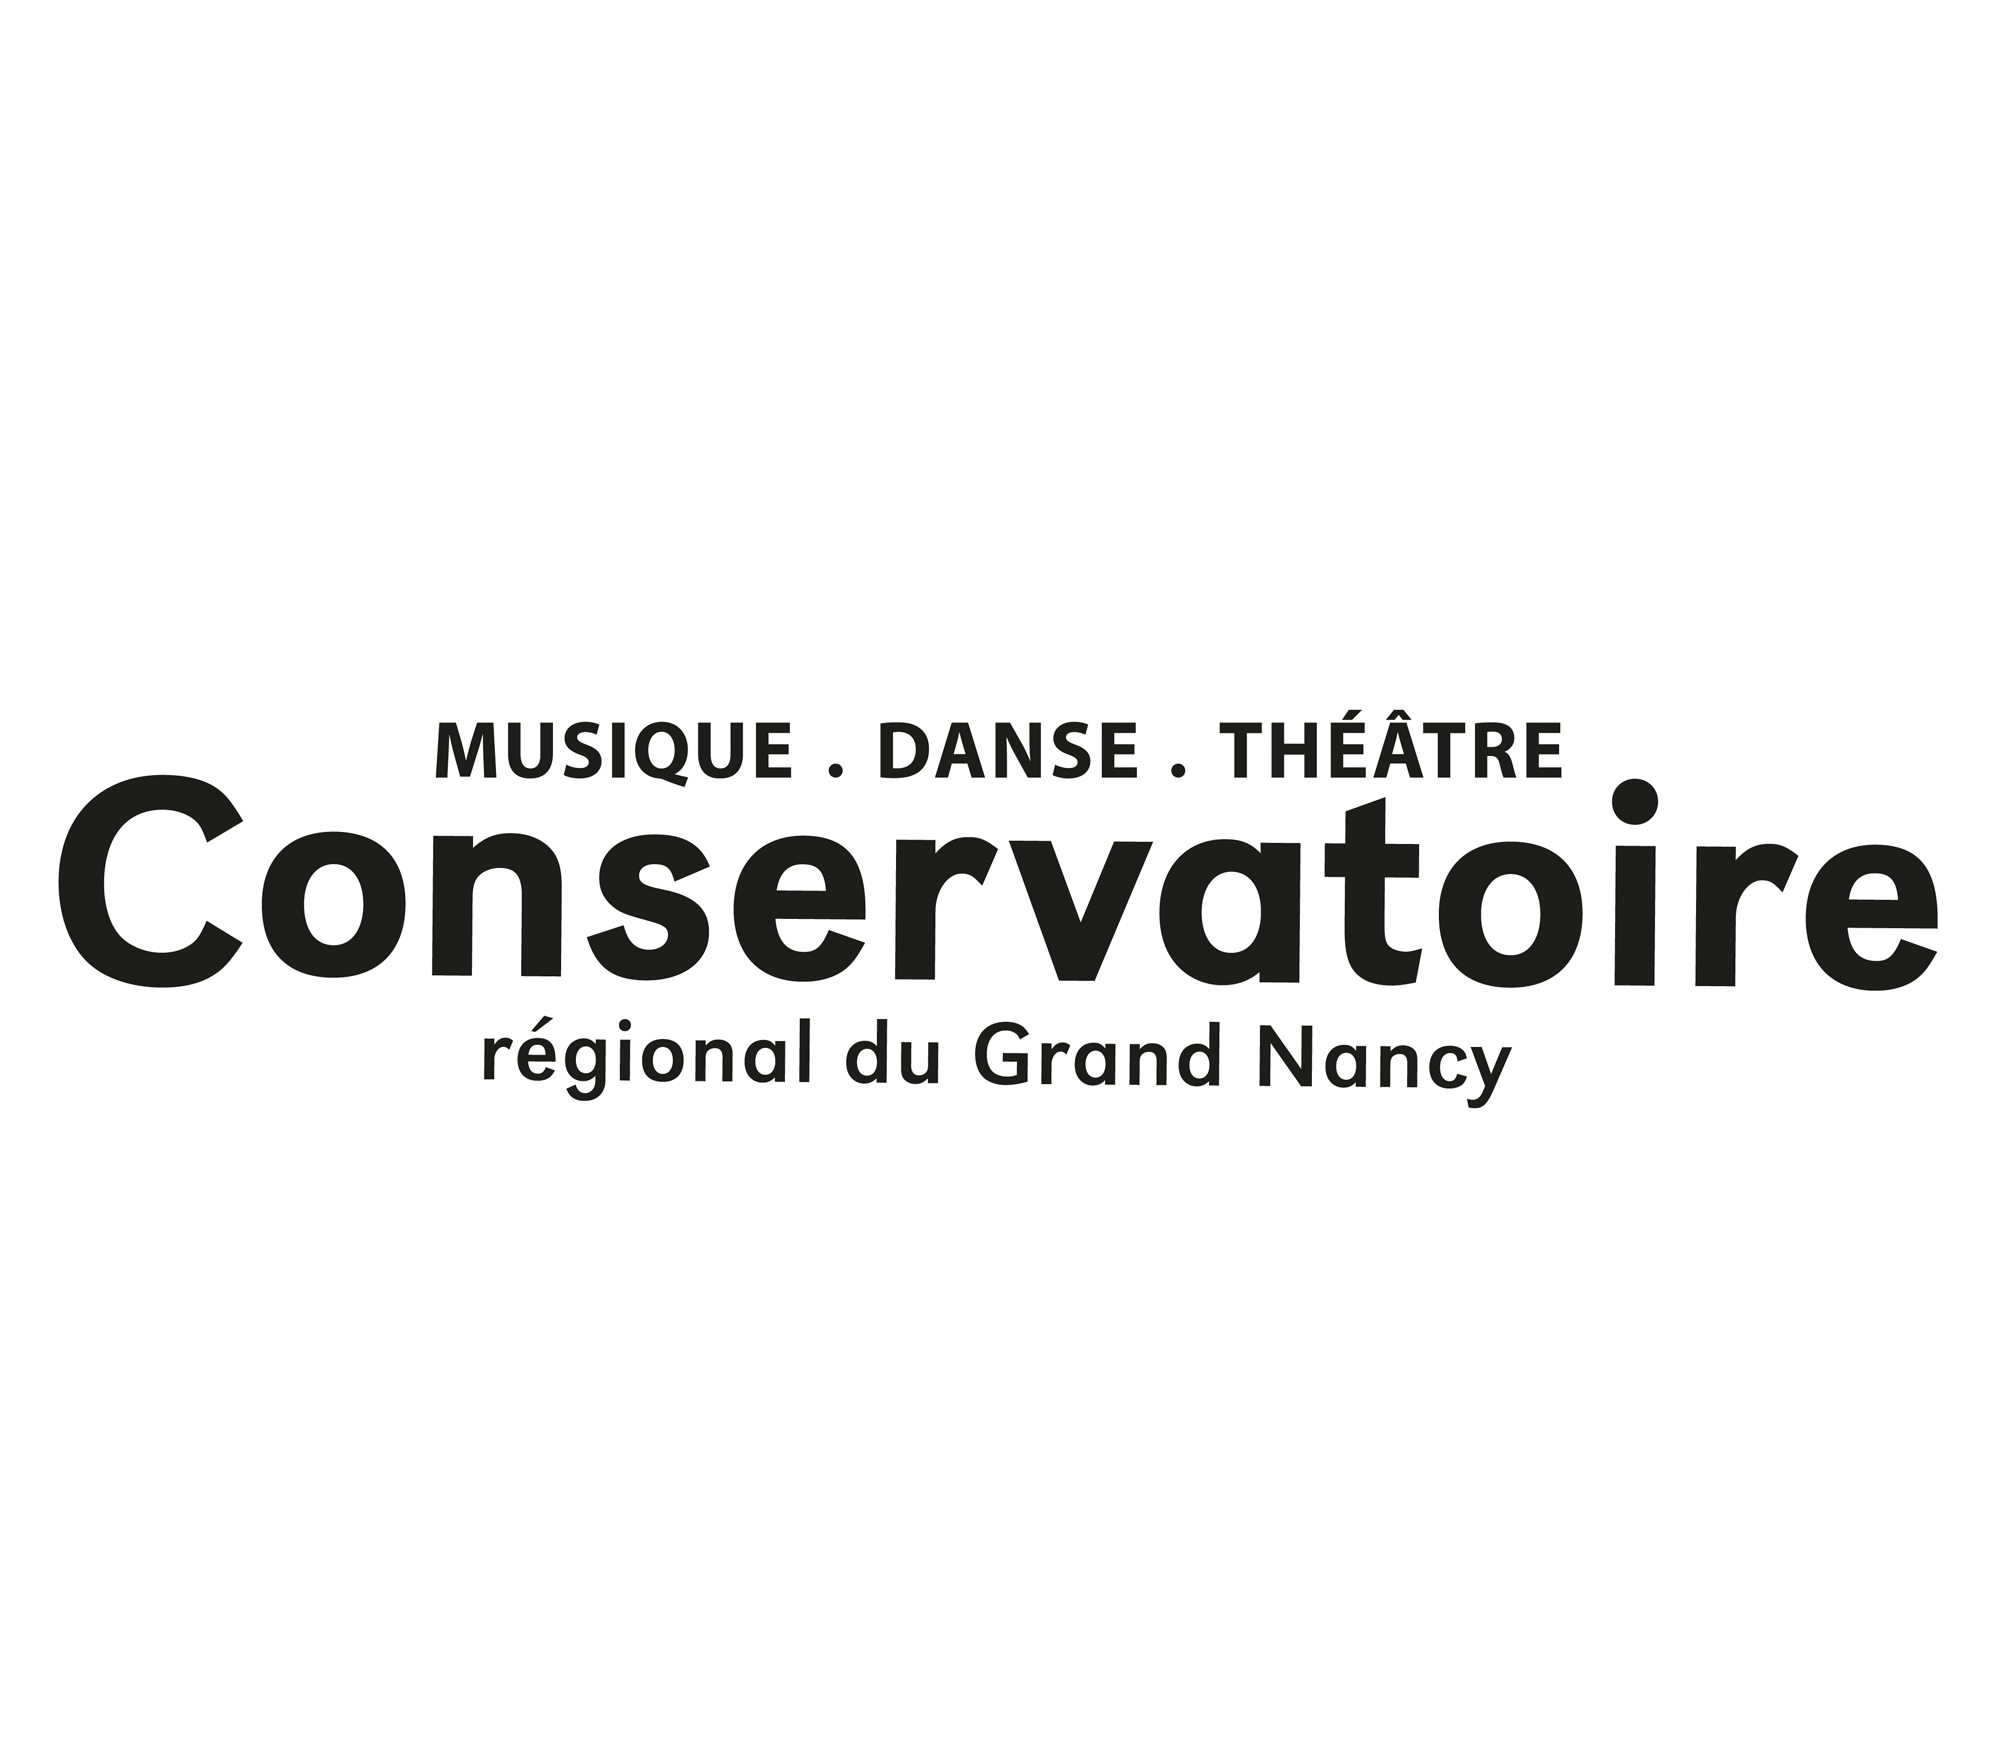 Conservatoire Régional du Grand Nancy - Musique, Danse, Théâtre